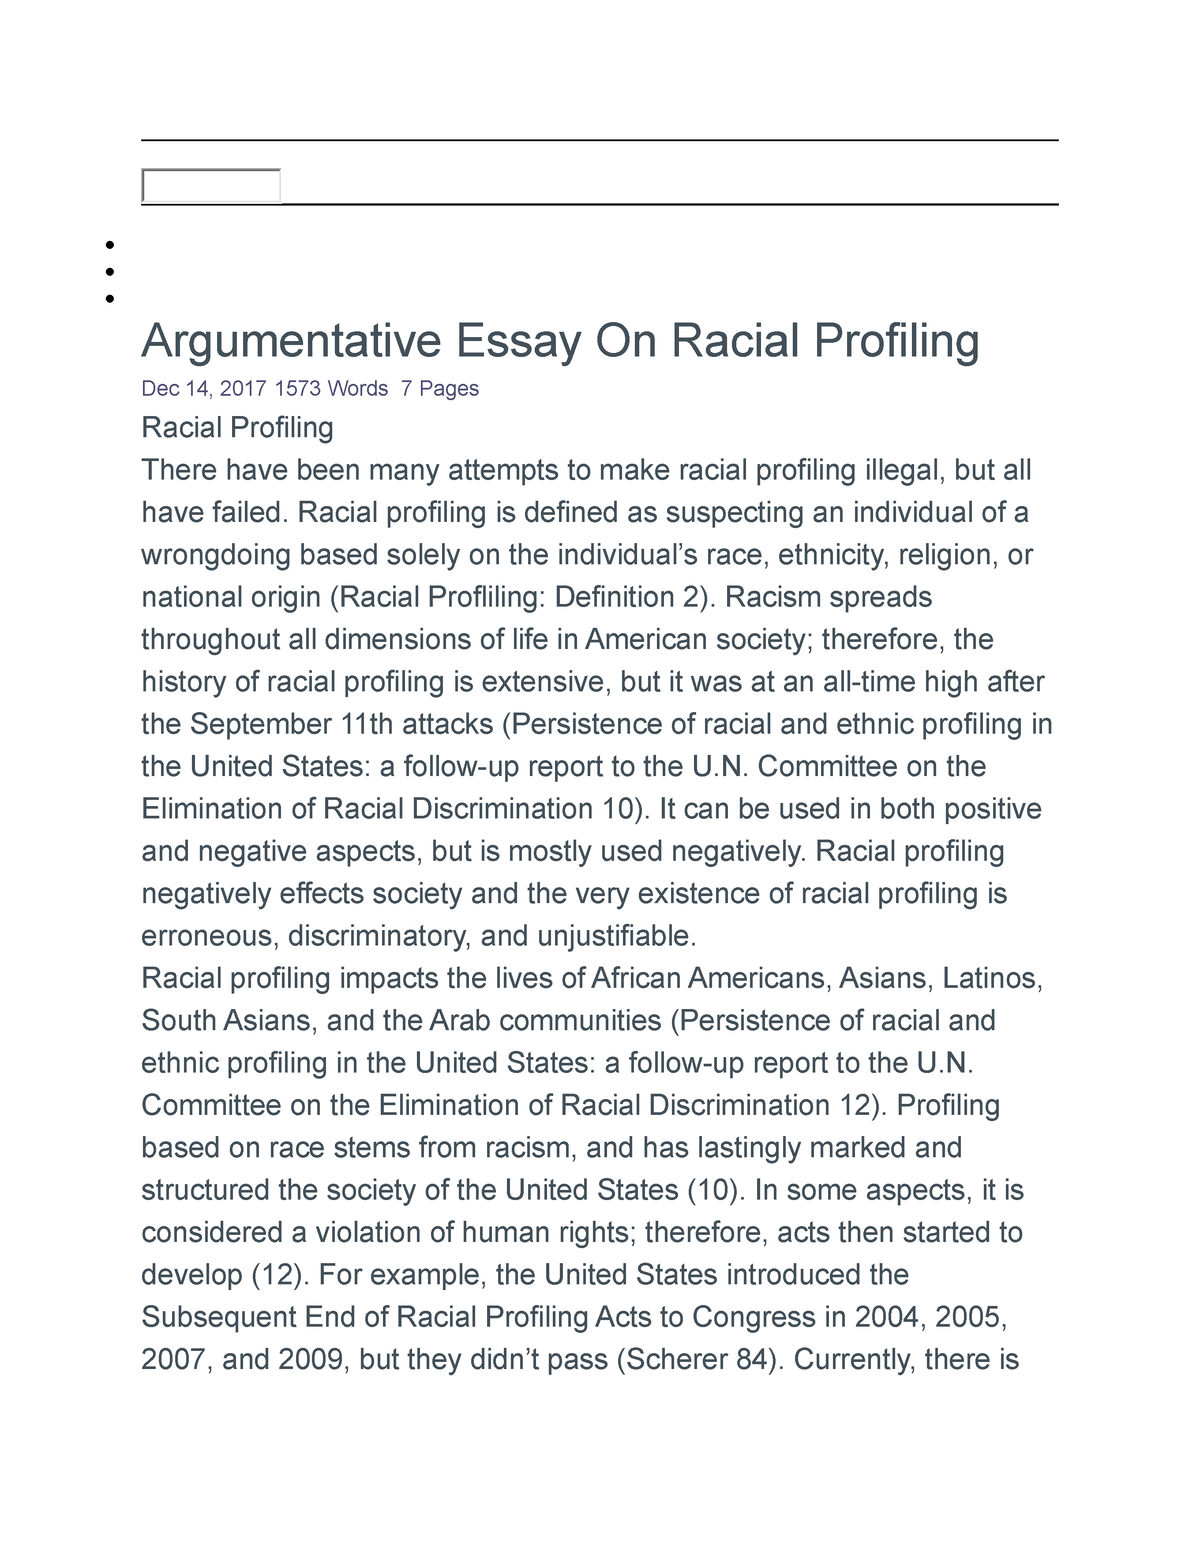 racial profiling essay outline